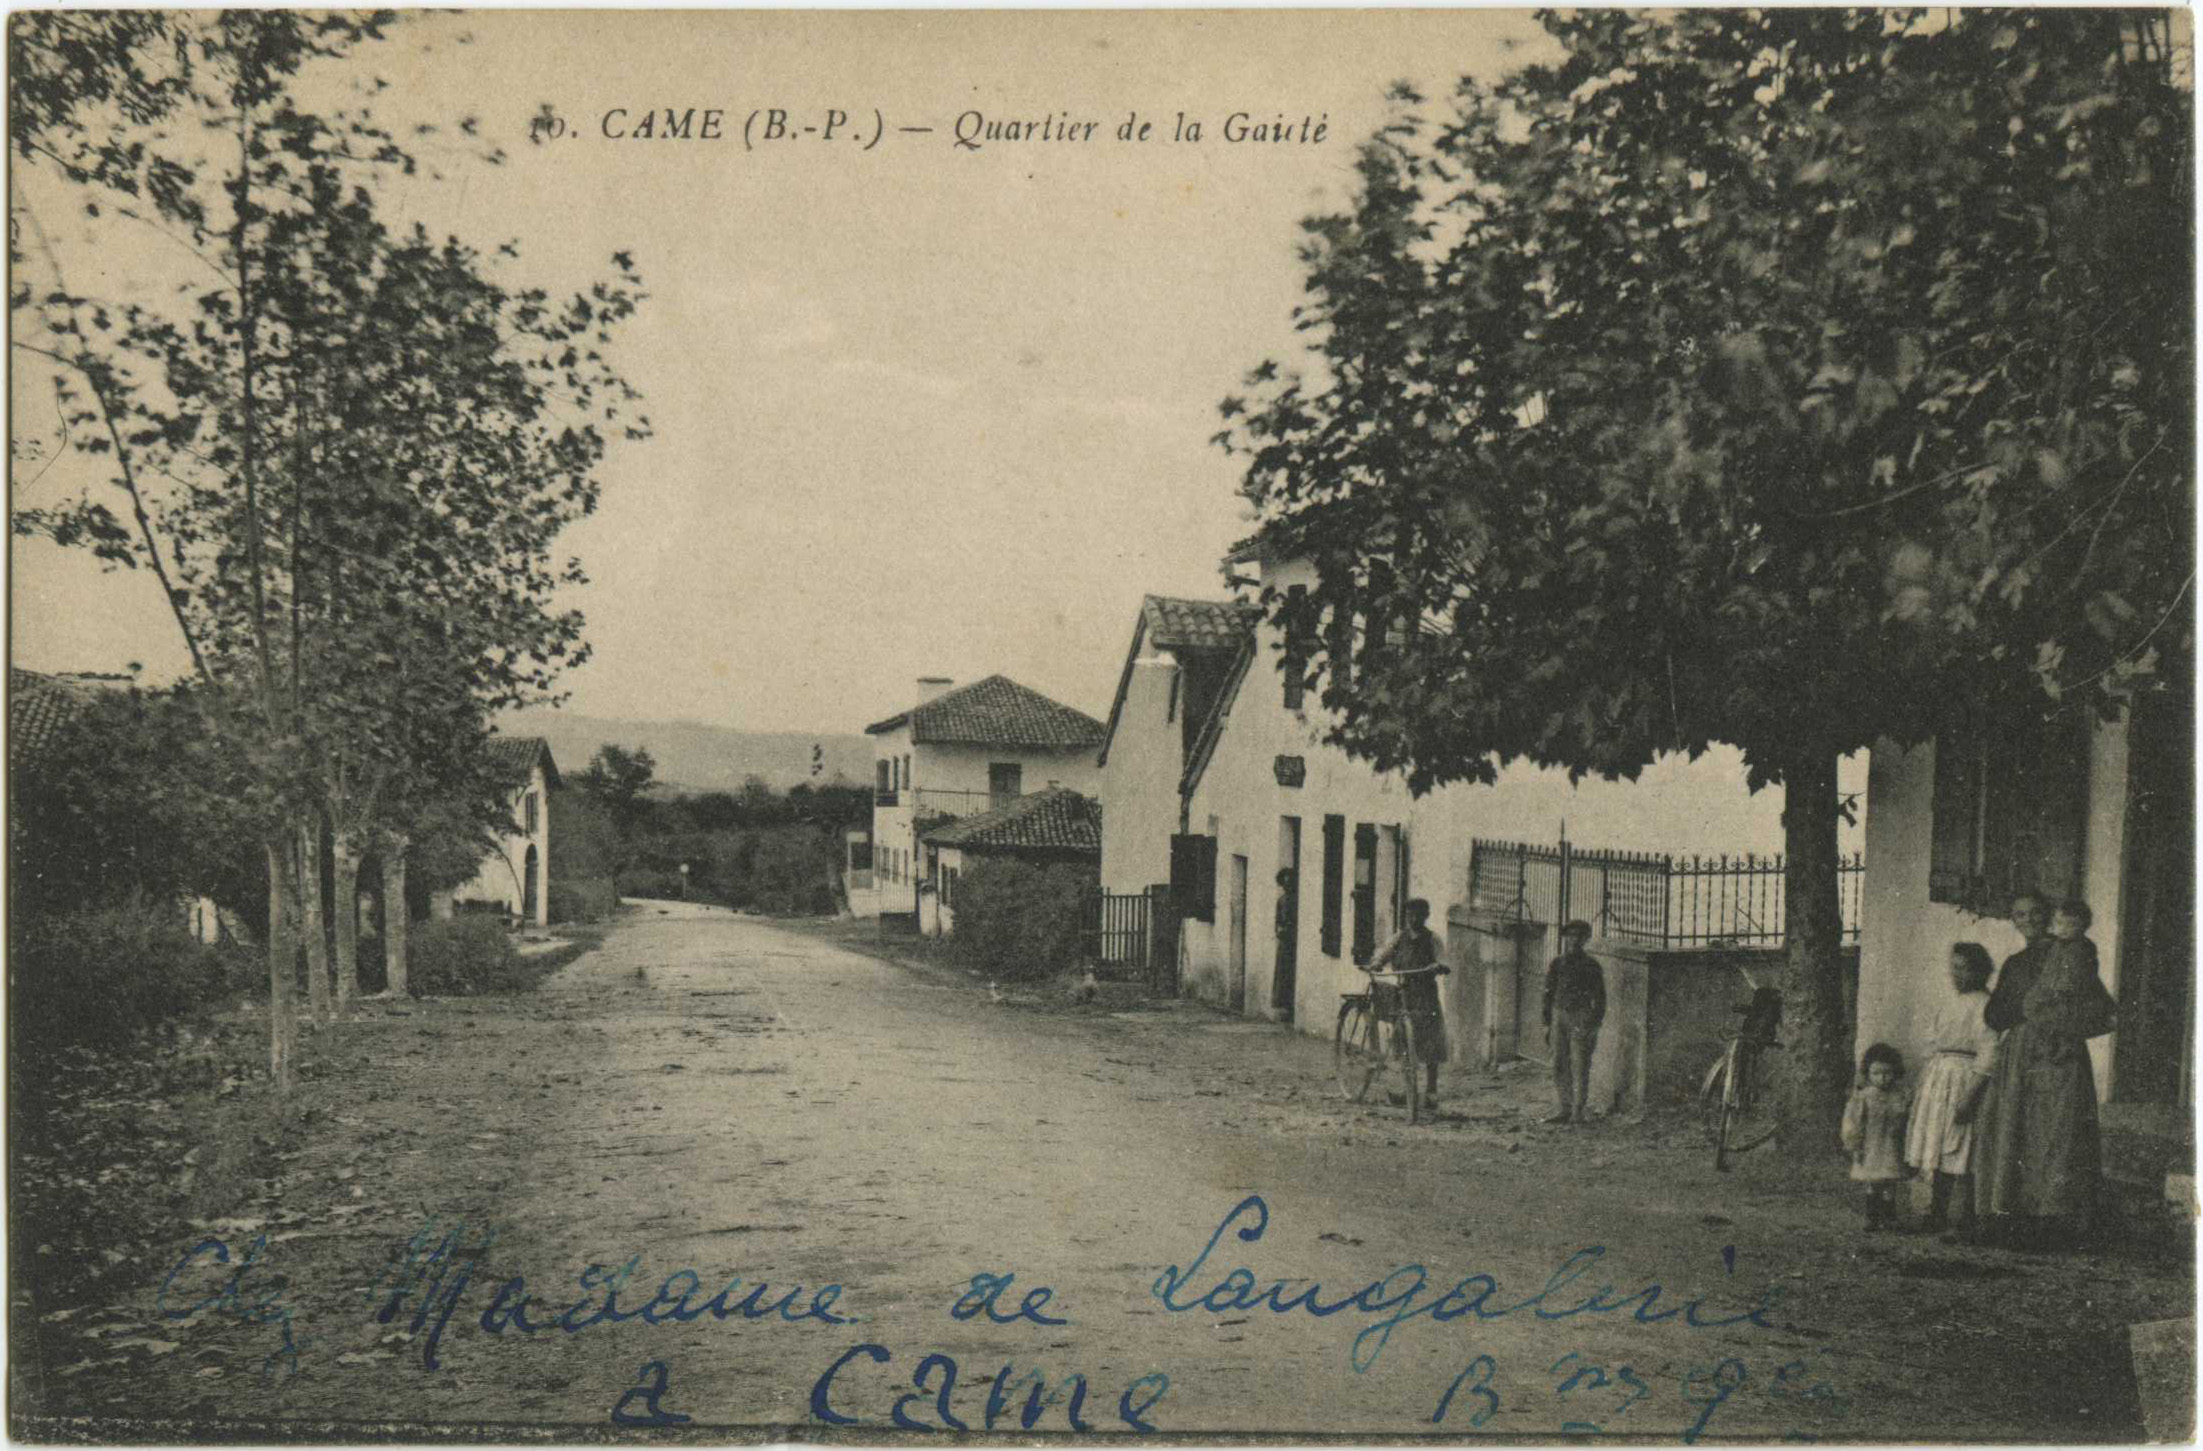 Came - Quartier de la Gaieté